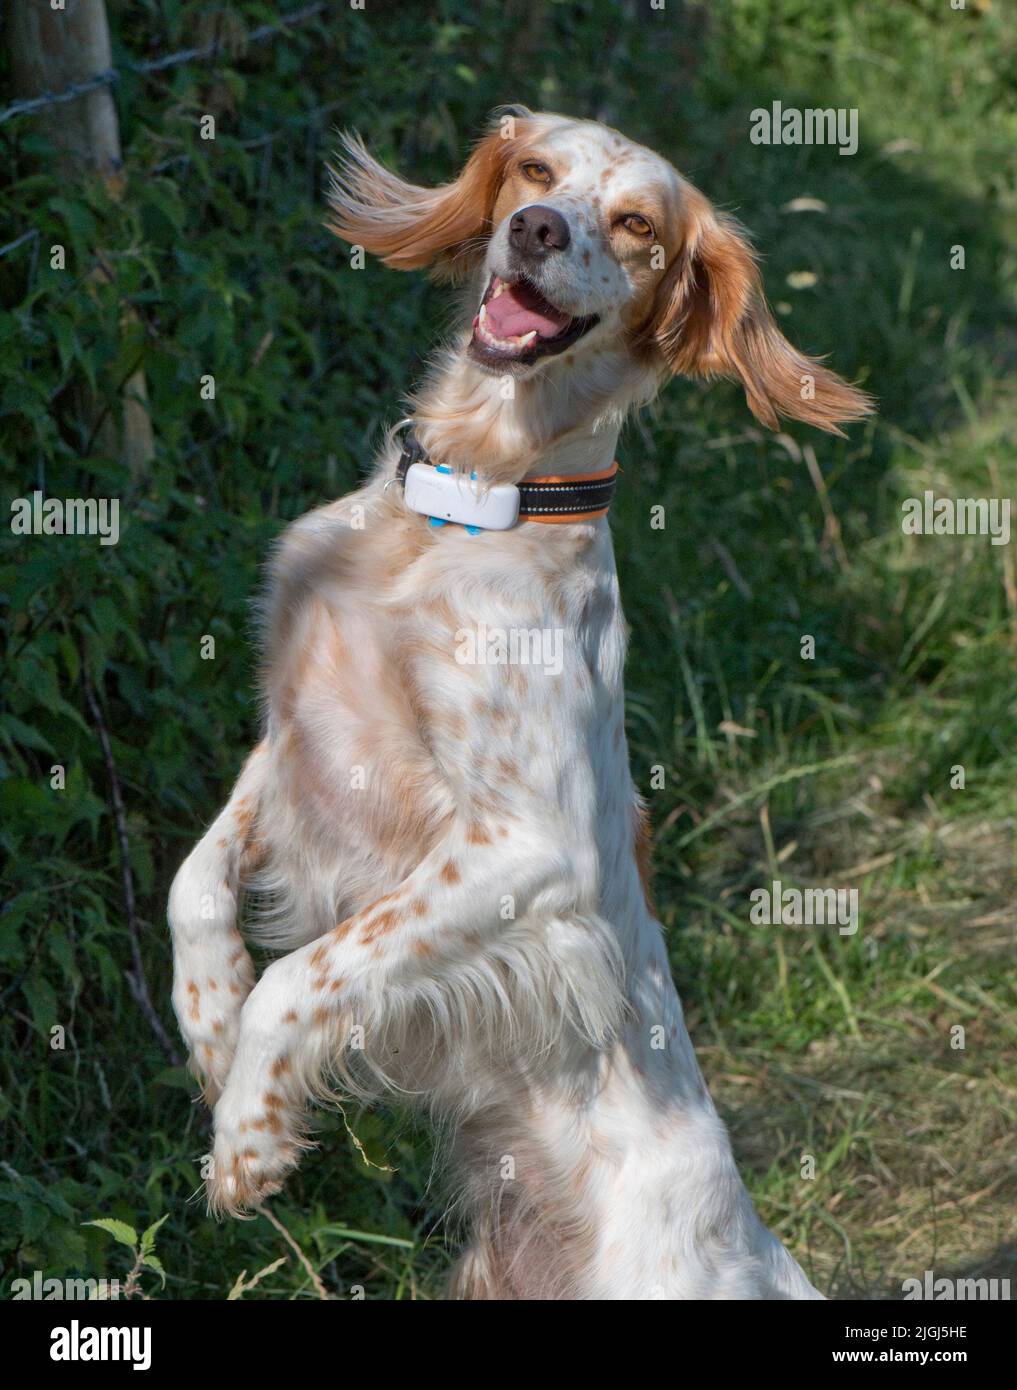 Perro setter inglés parado en sus pies traseros con orejas 'volando' y mandíbulas ligeramente abiertas mirando a la presa, Berkshire, julio Foto de stock